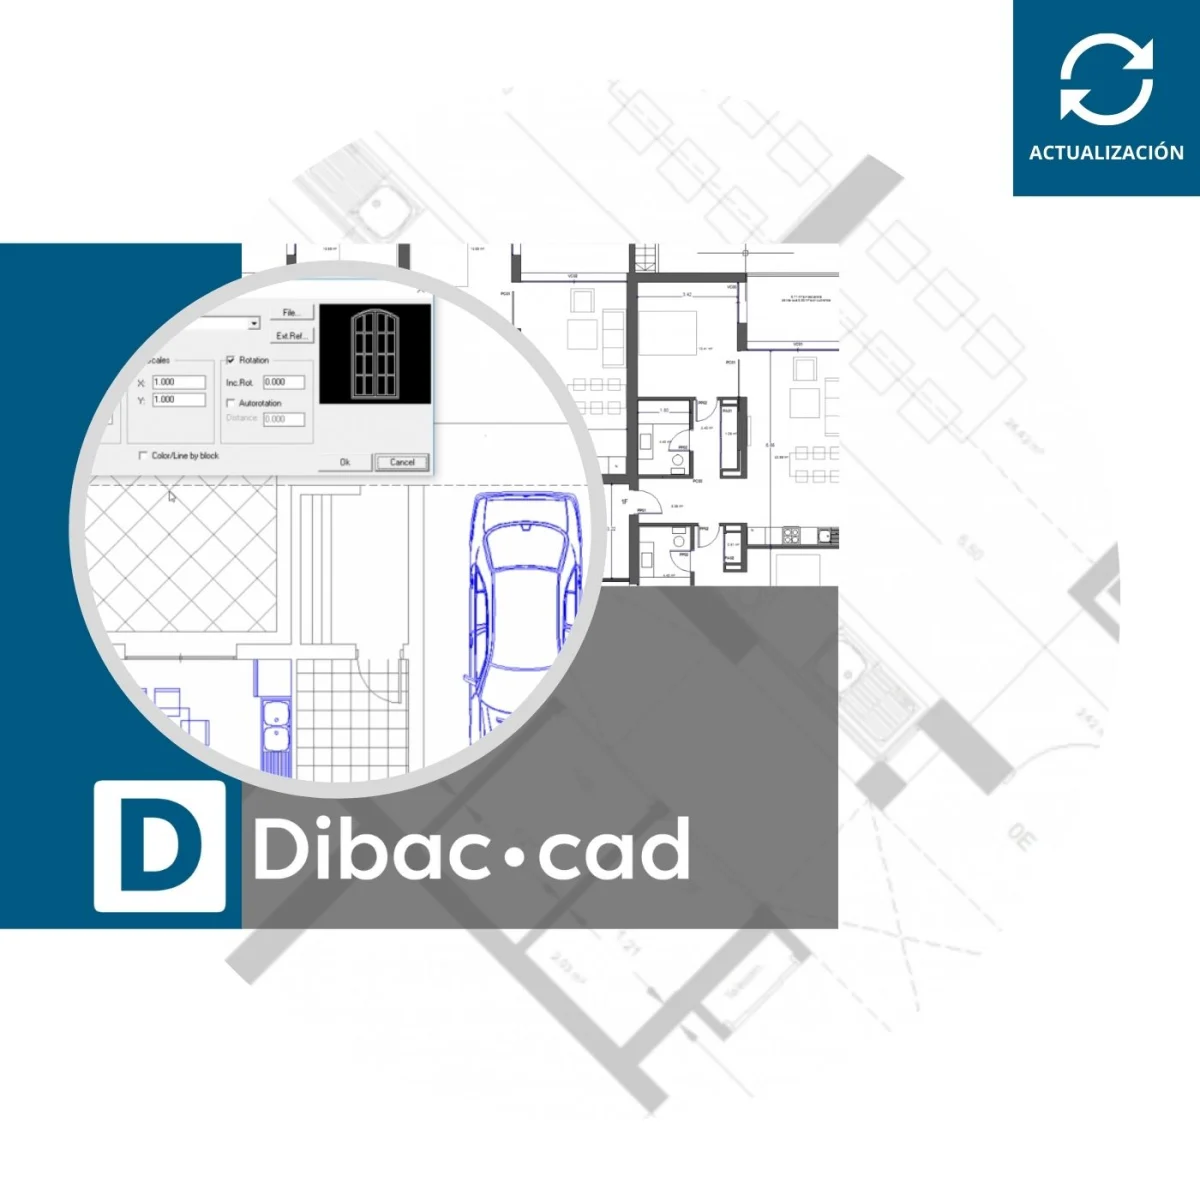 DIBAC CAD Actualizacion